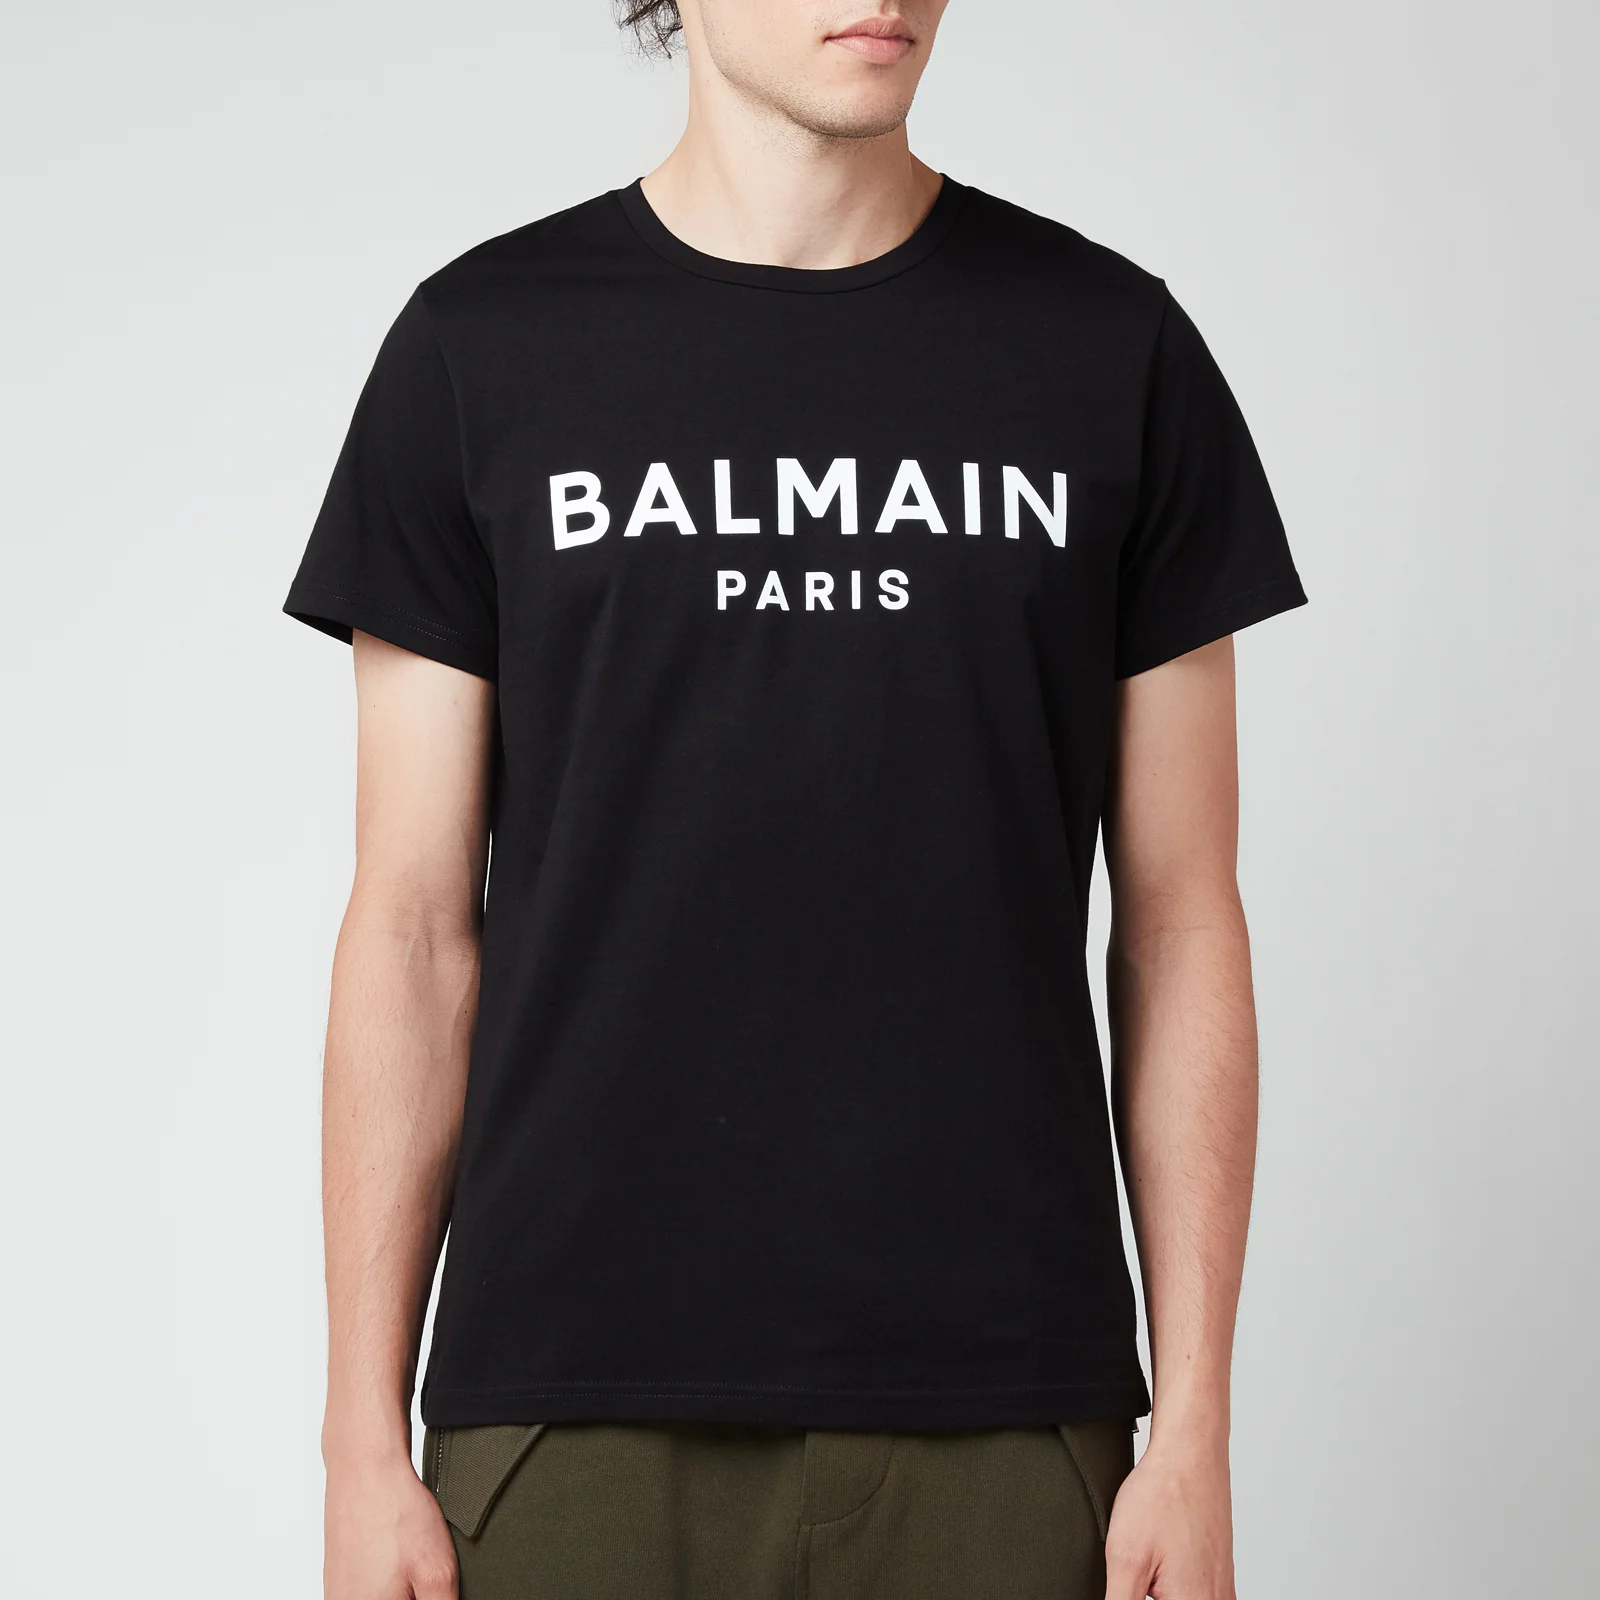 Balmain Men's Printed T-Shirt - Black/White Image 1